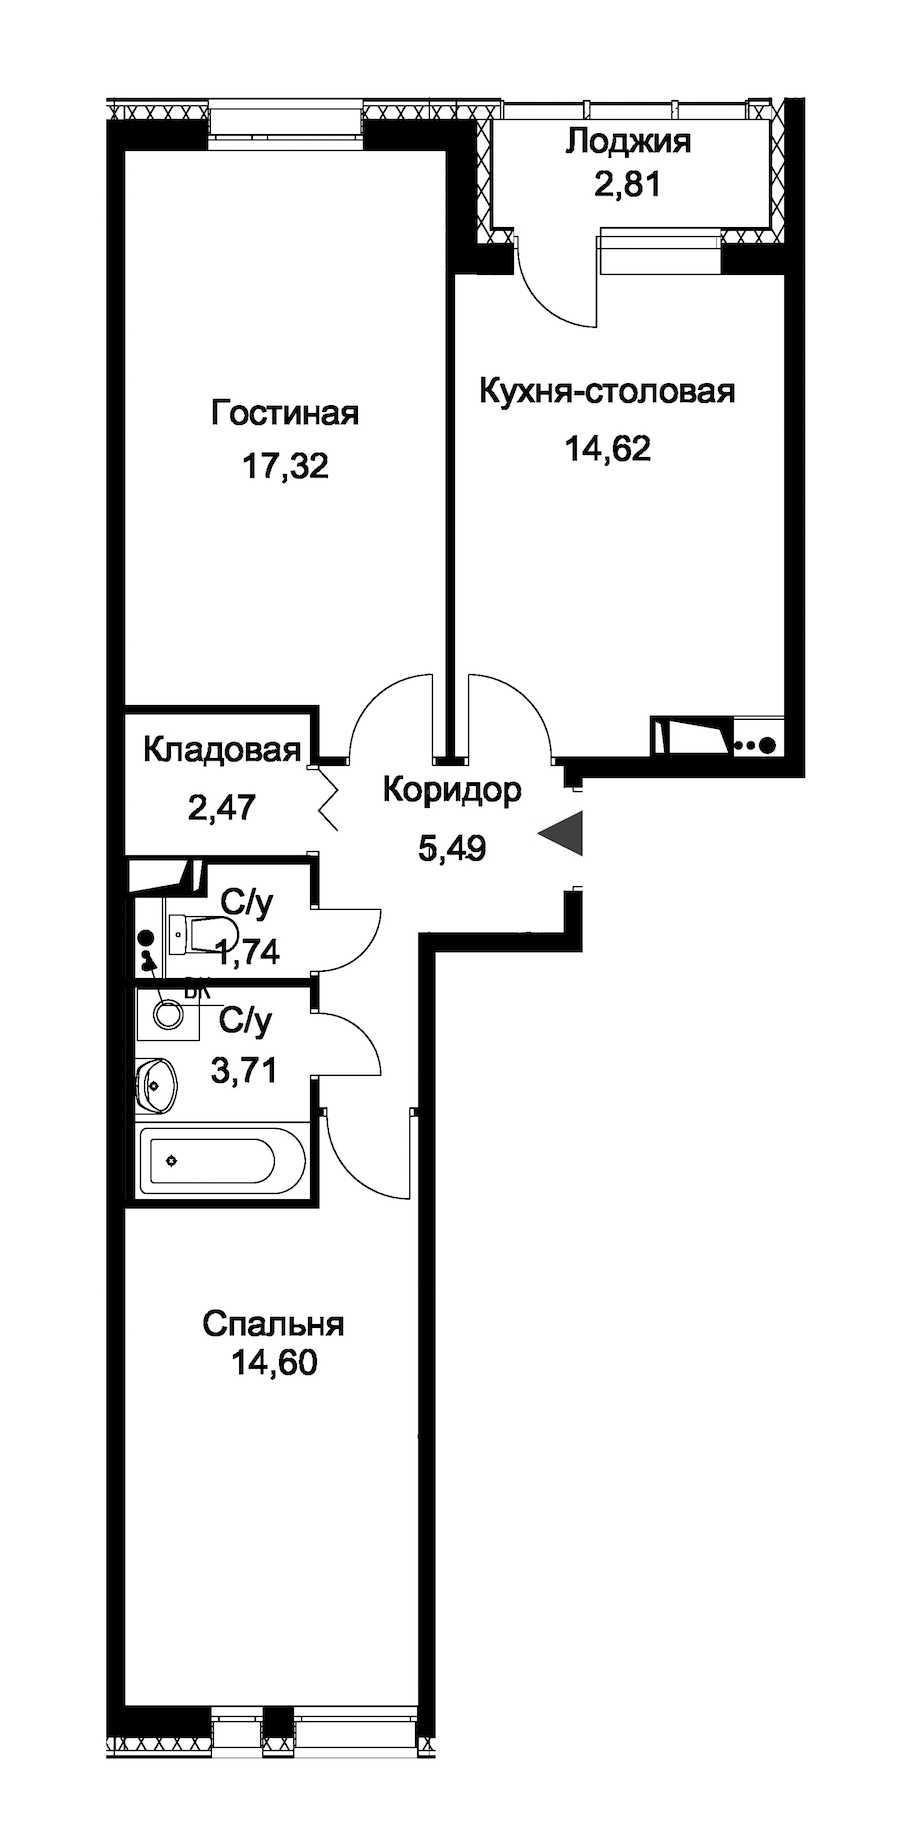 Двухкомнатная квартира в : площадь 61.36 м2 , этаж: 1 – купить в Санкт-Петербурге